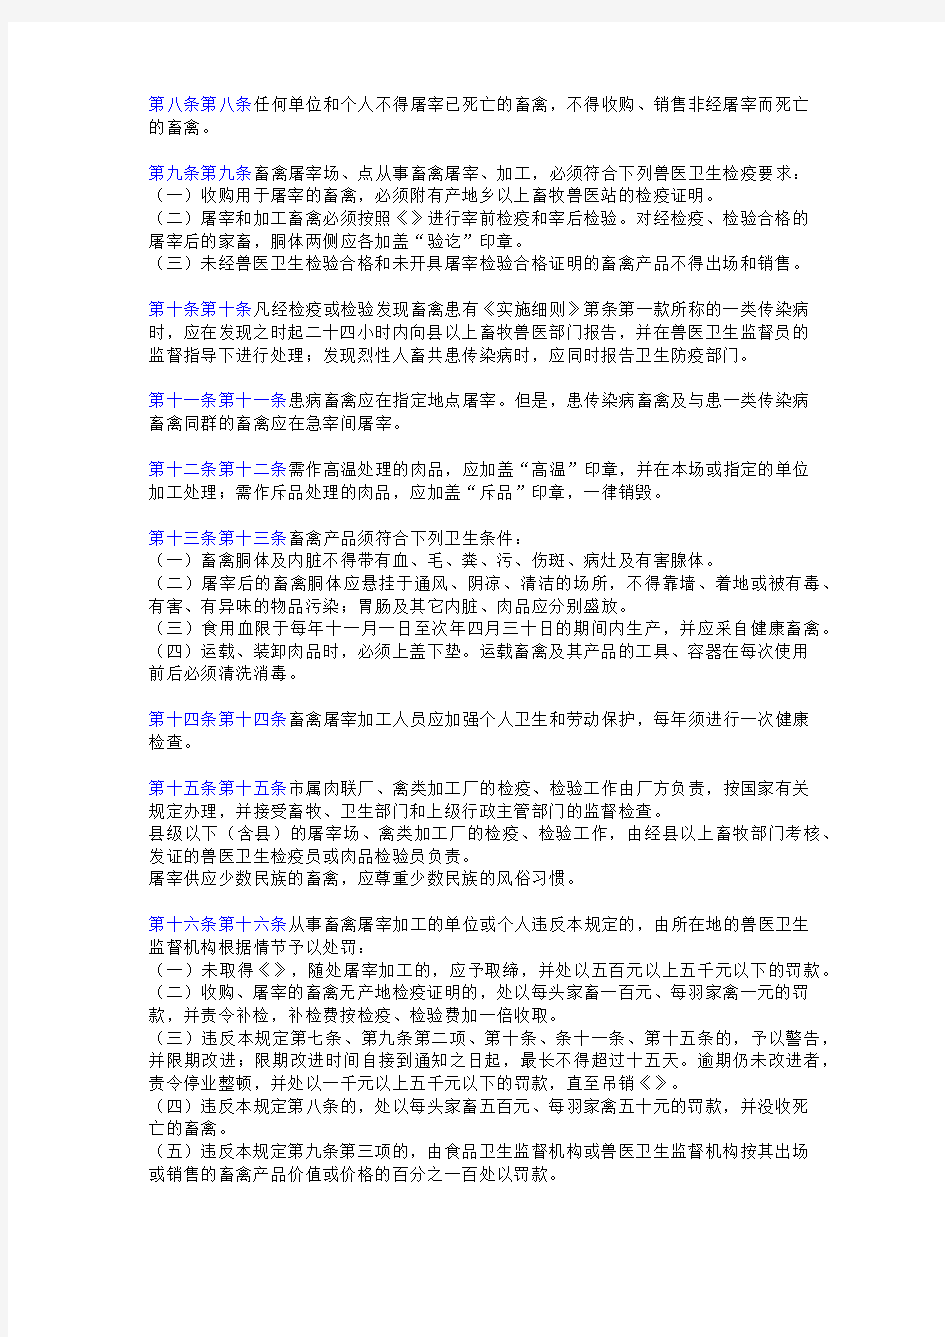 上海市家畜家禽屠宰管理暂行规定